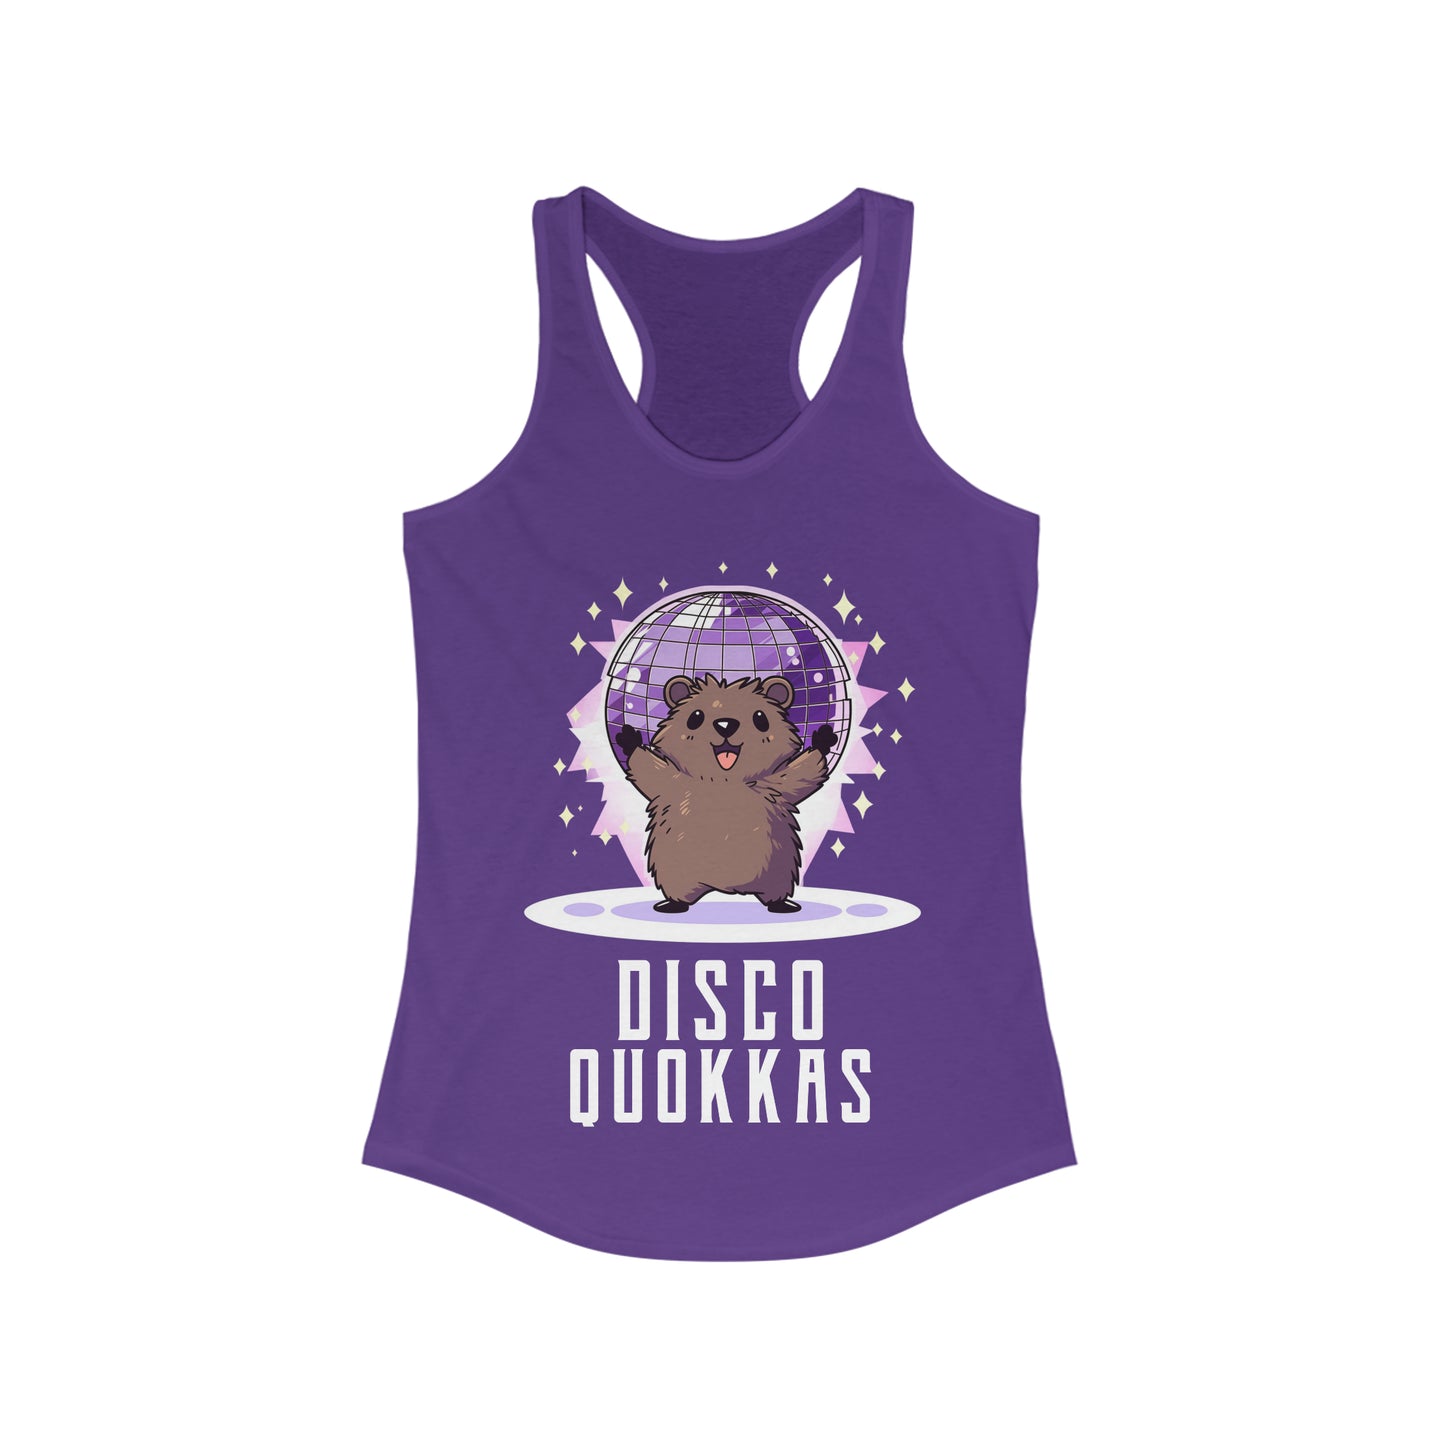 Disco Quokkas Tank Top